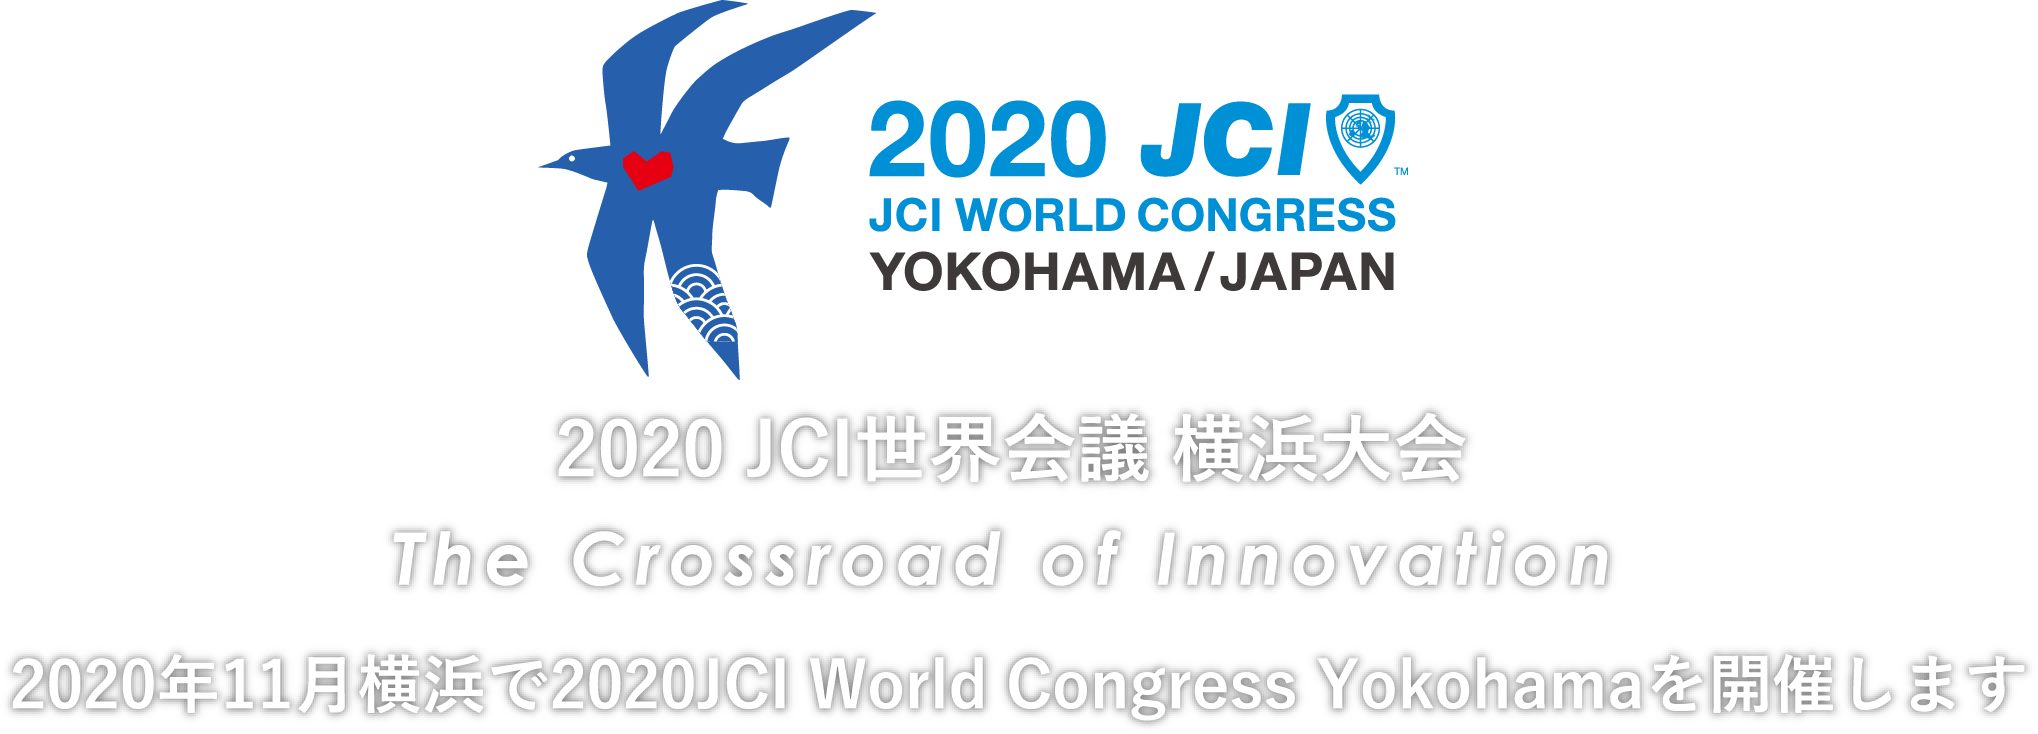 JCI WORLD CONGRESS